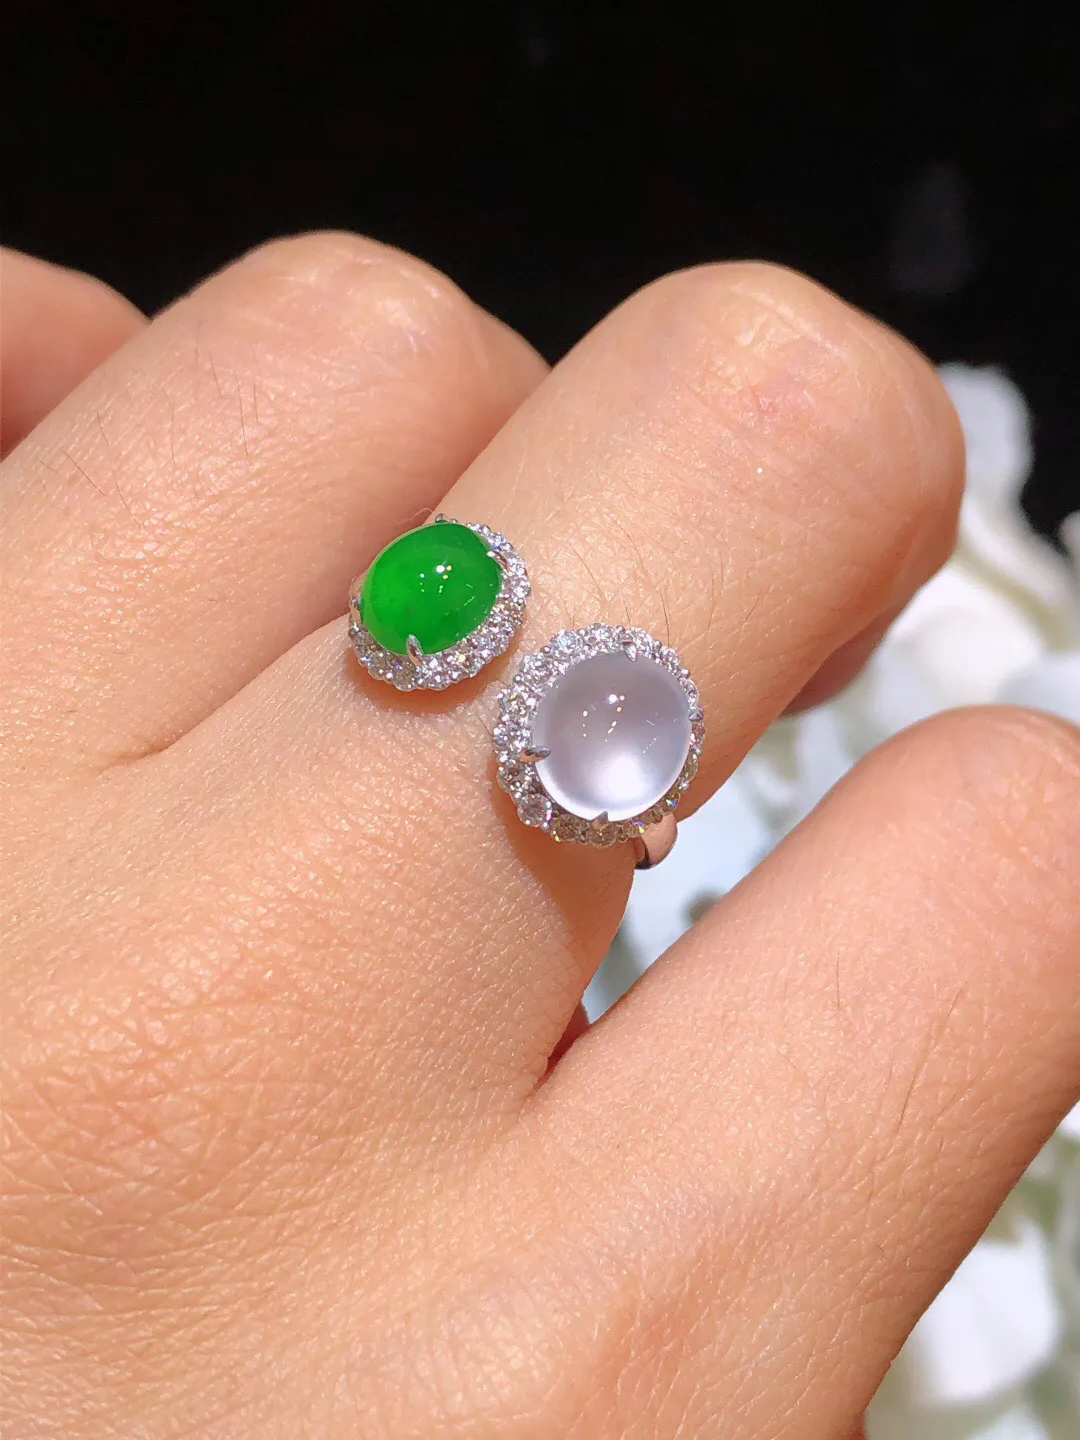 翡翠冰绿双色戒指 雕工精湛 颜色清爽 饱满圆润